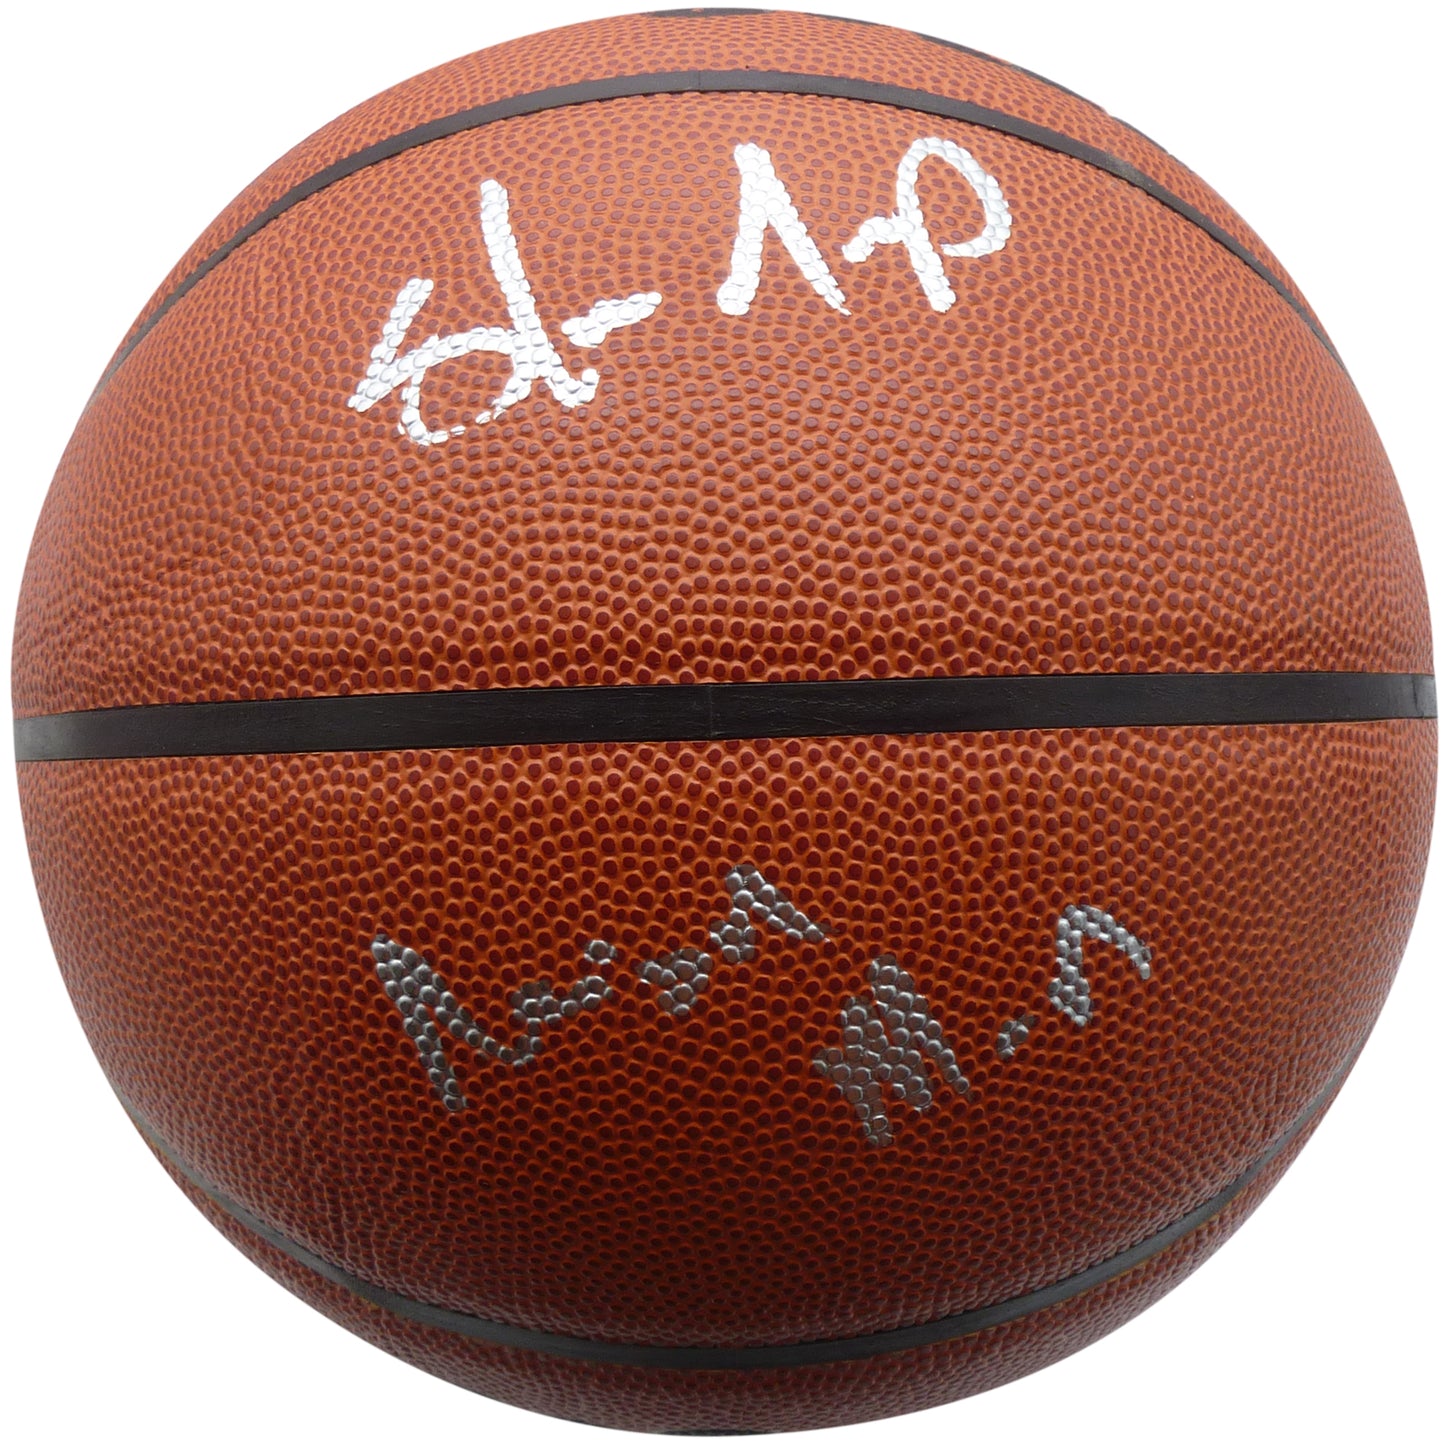 Shawn Kemp Autographed NBA Basketball w/ “Reign Man” – Beckett